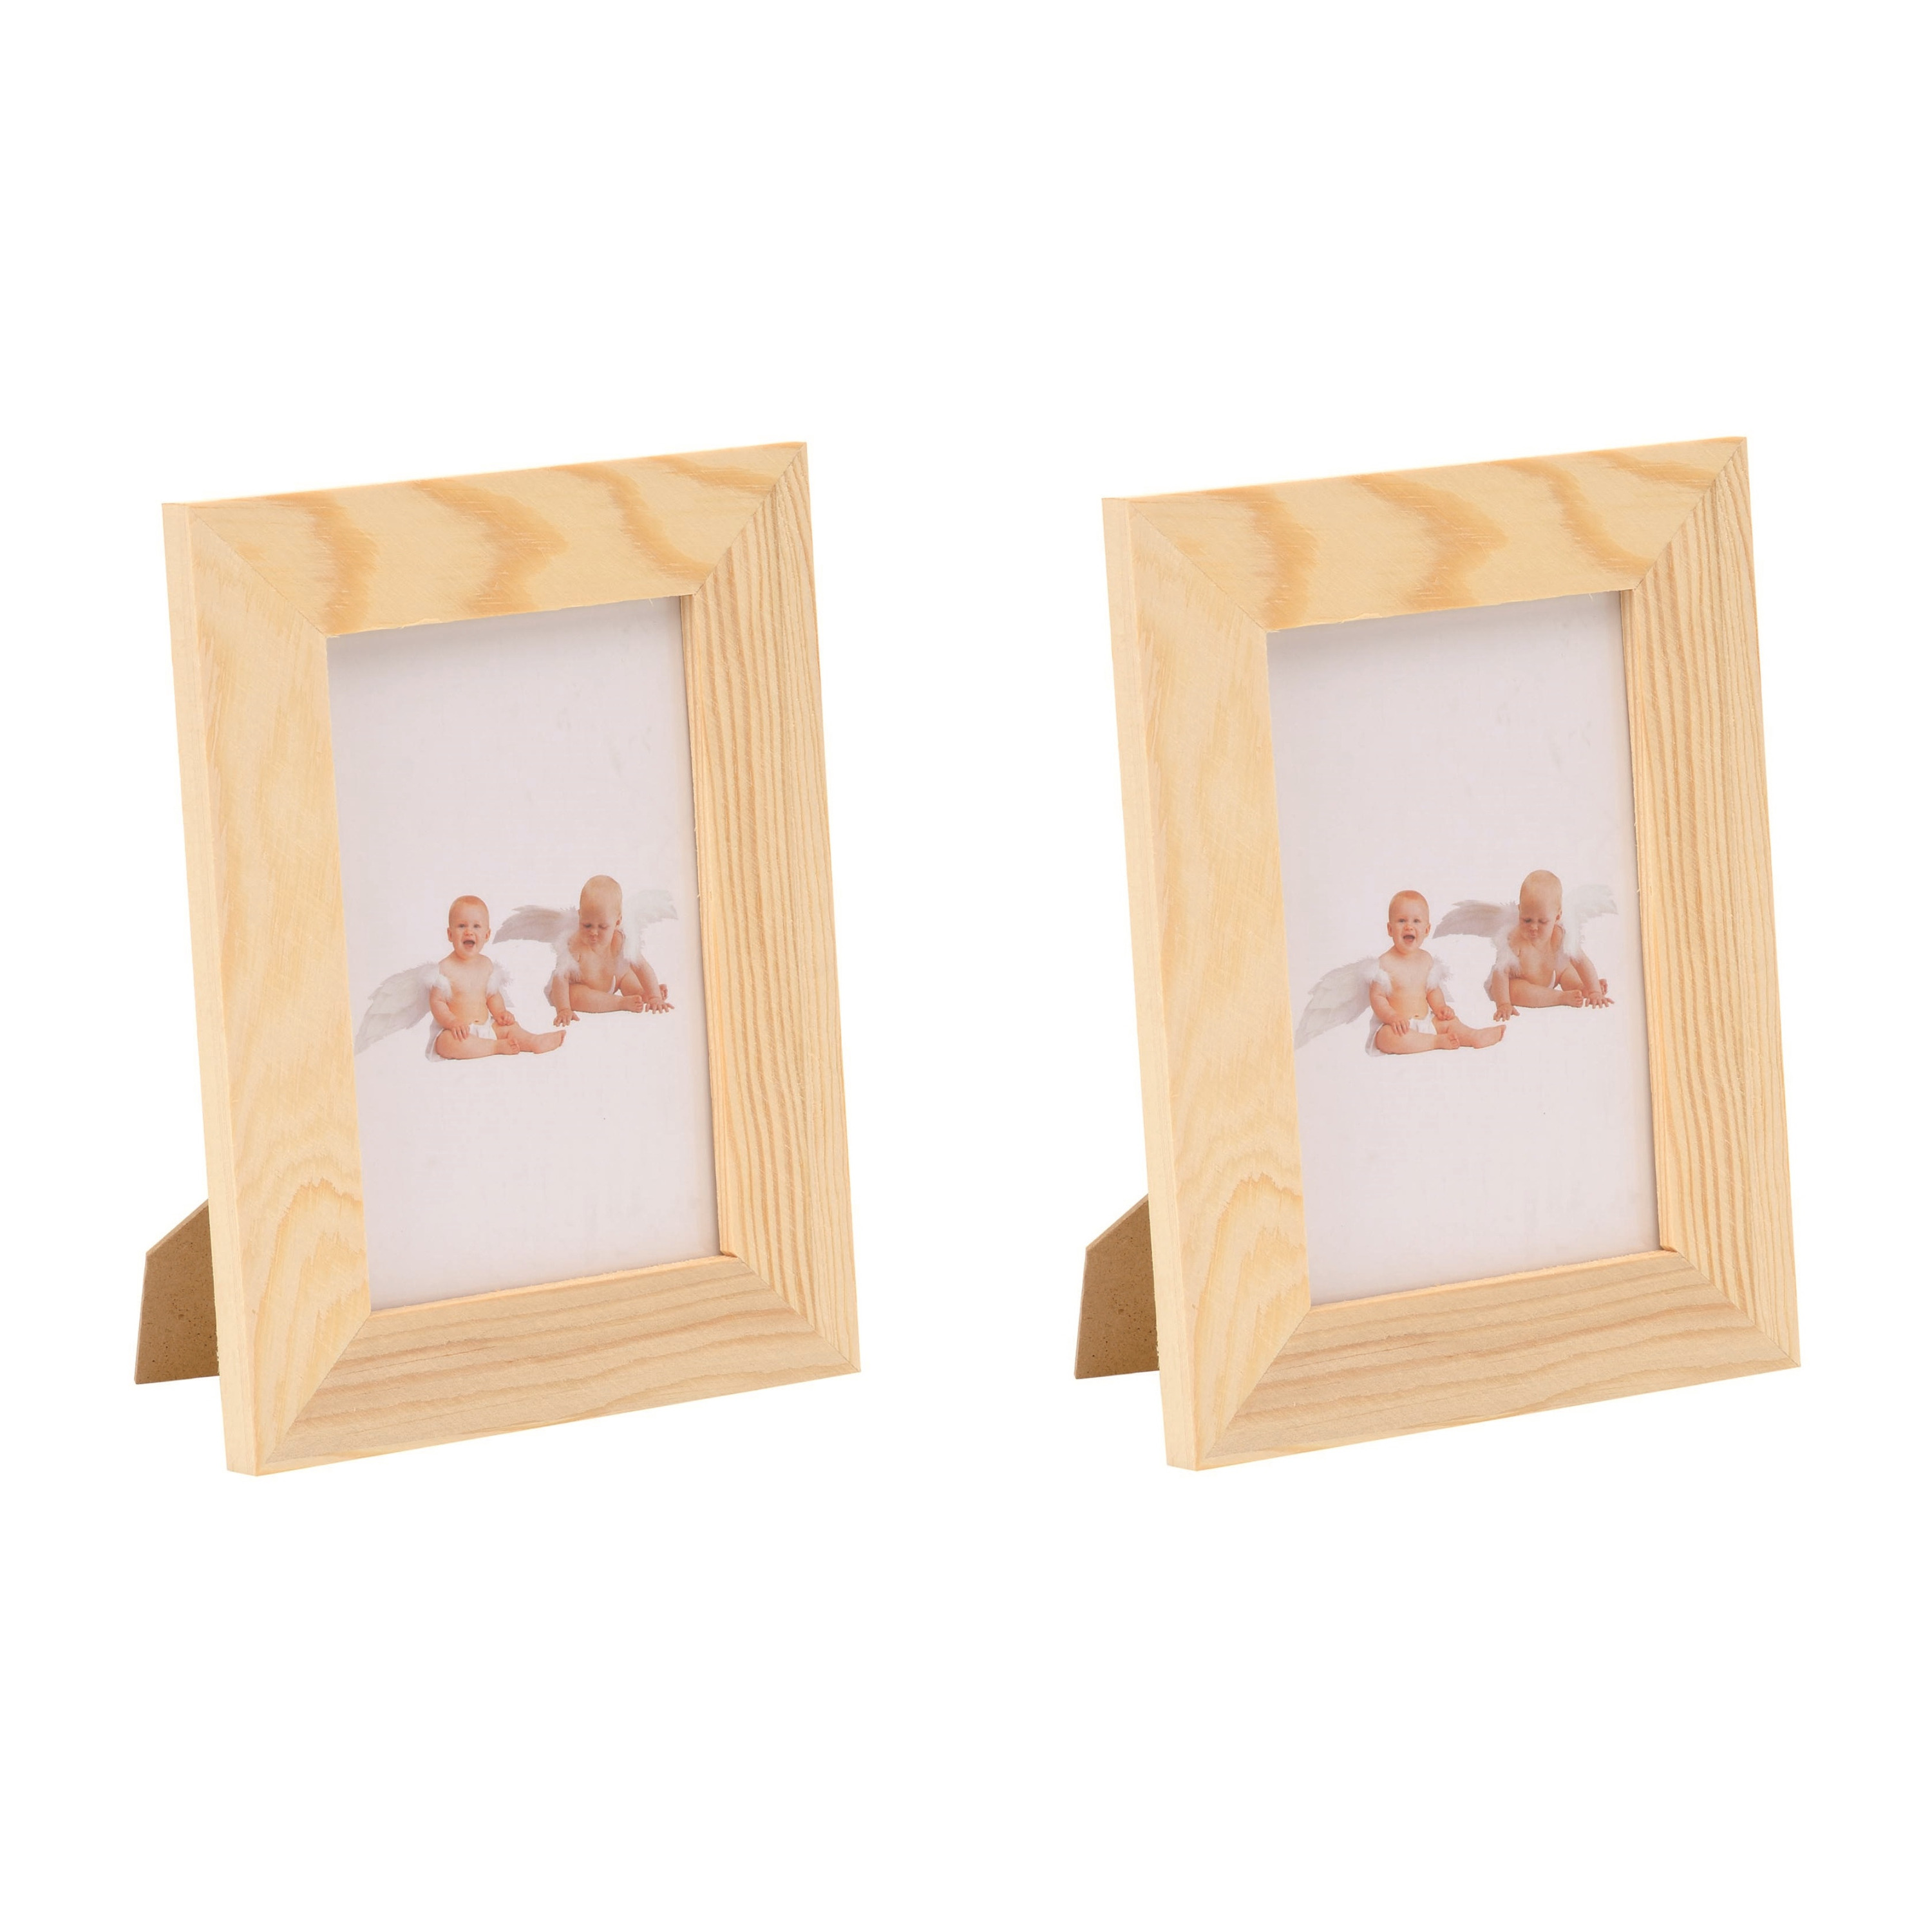 2x stuks houten fotolijsten-fotolijstjes 14.5 x 19.5 cm DIY hobby-knutselmateriaal